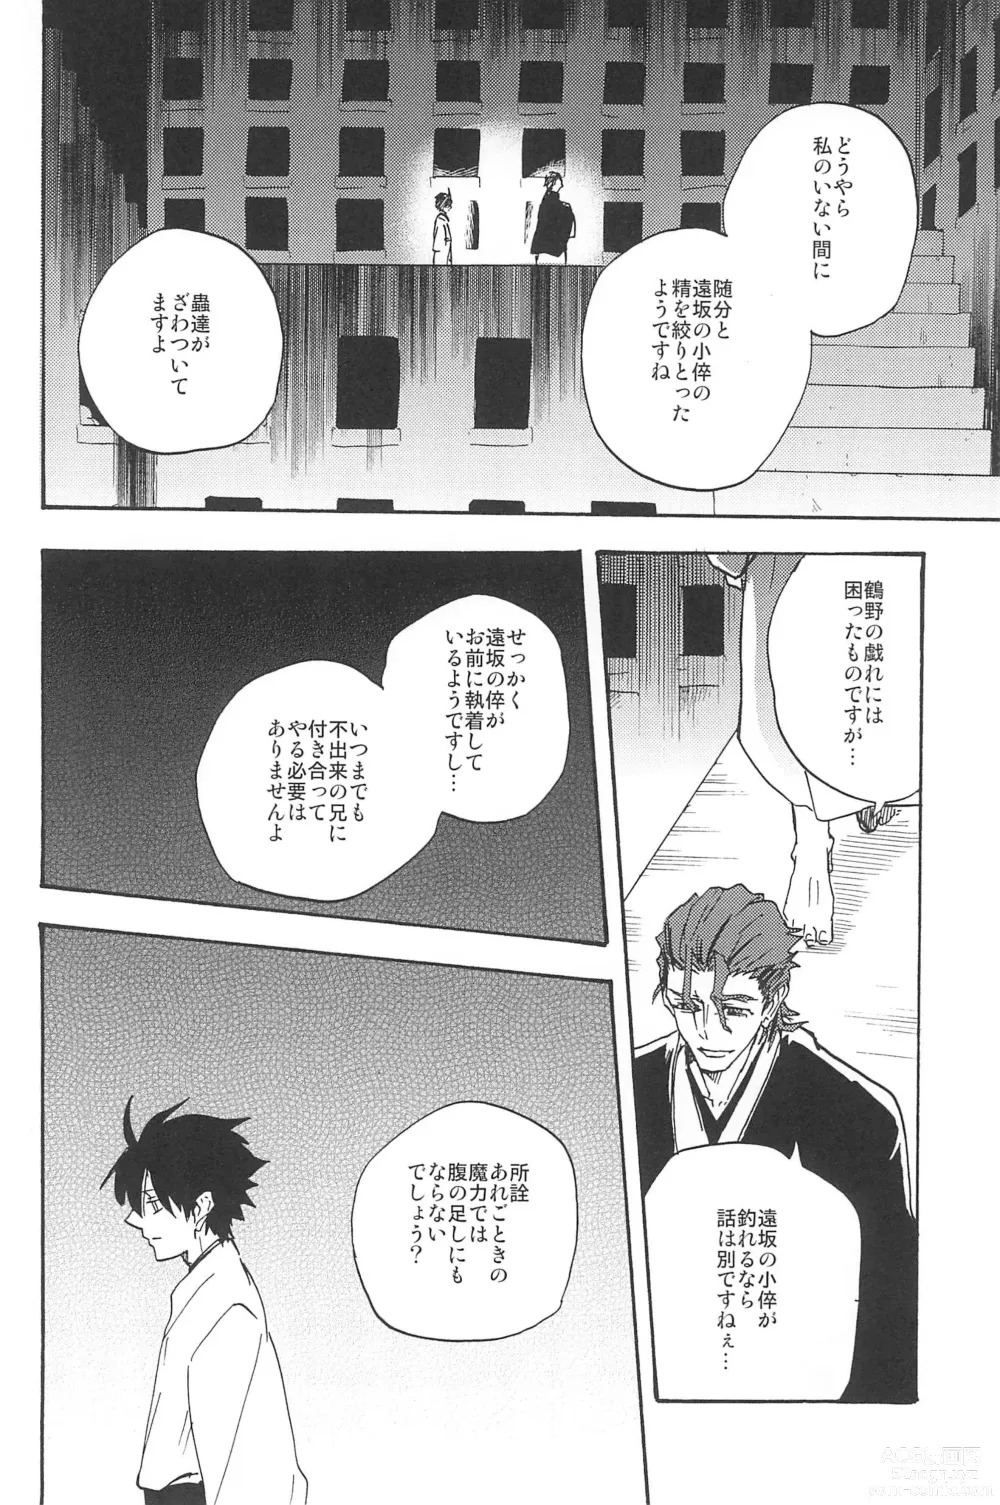 Page 308 of doujinshi RE:BERSERK